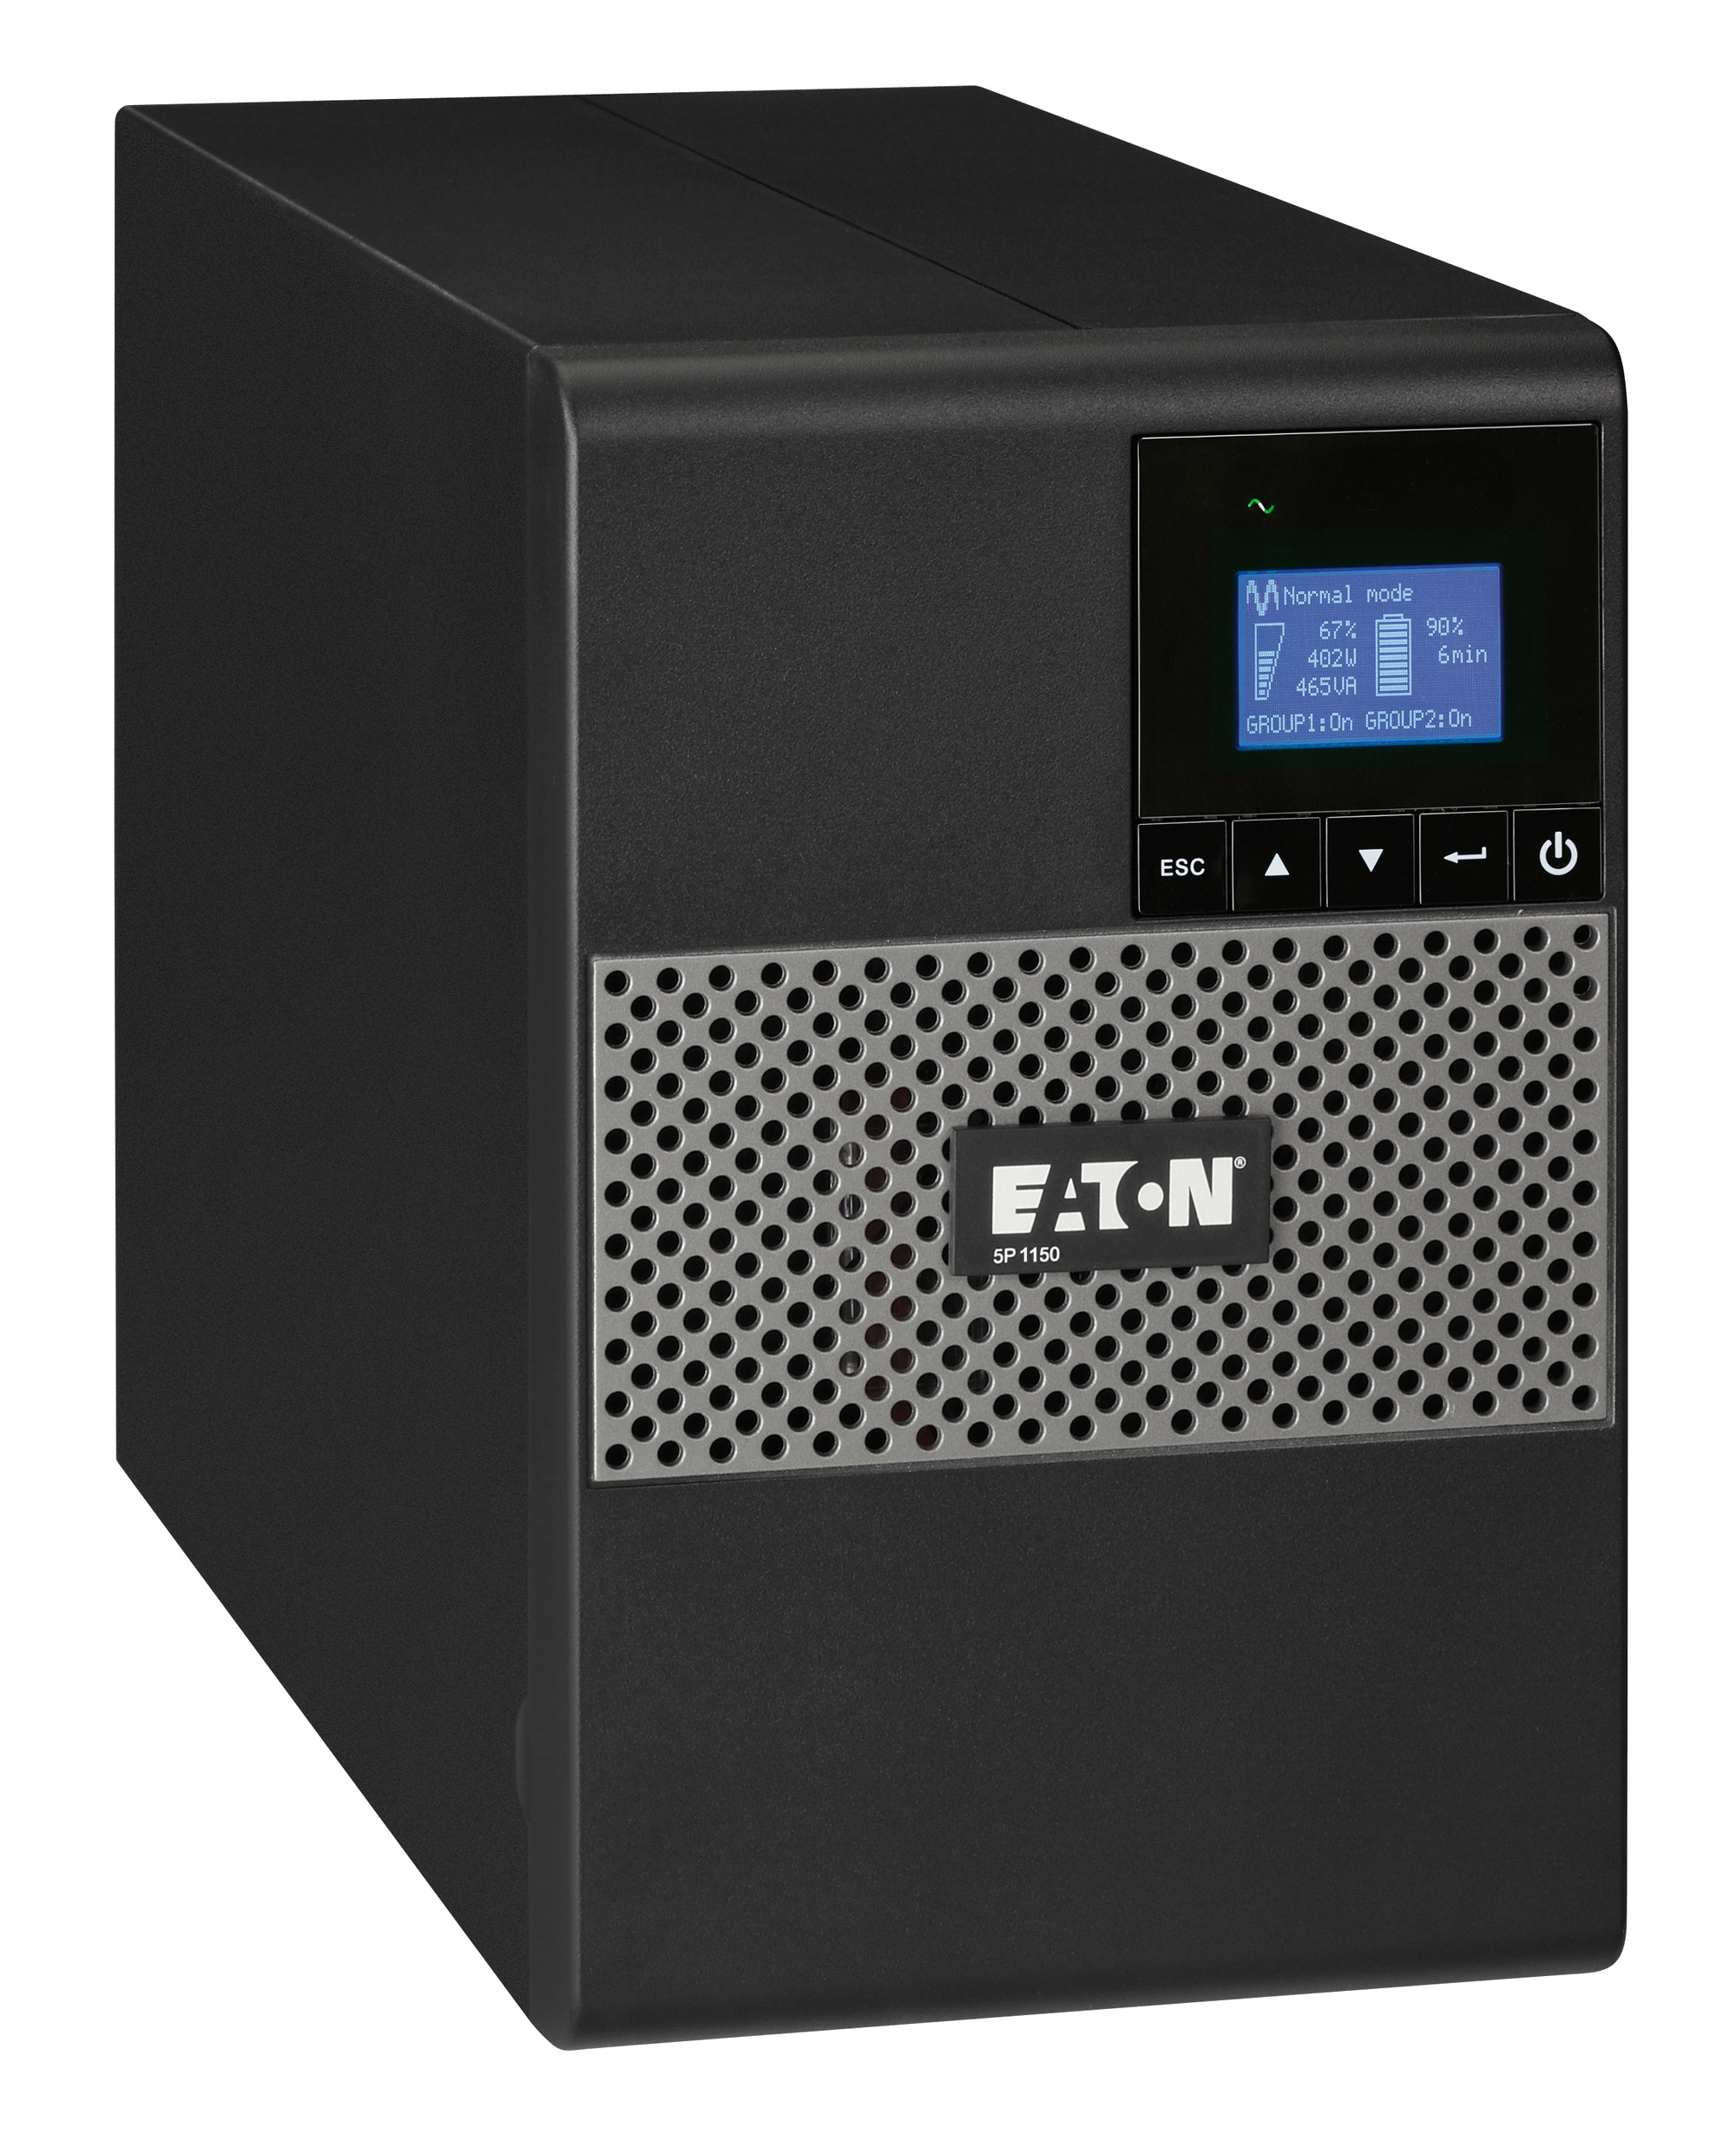 ИБП Eaton 5P 1150I, 1150VA, 770W, IEC, розеток - 8, USB, черный (5P1150i)